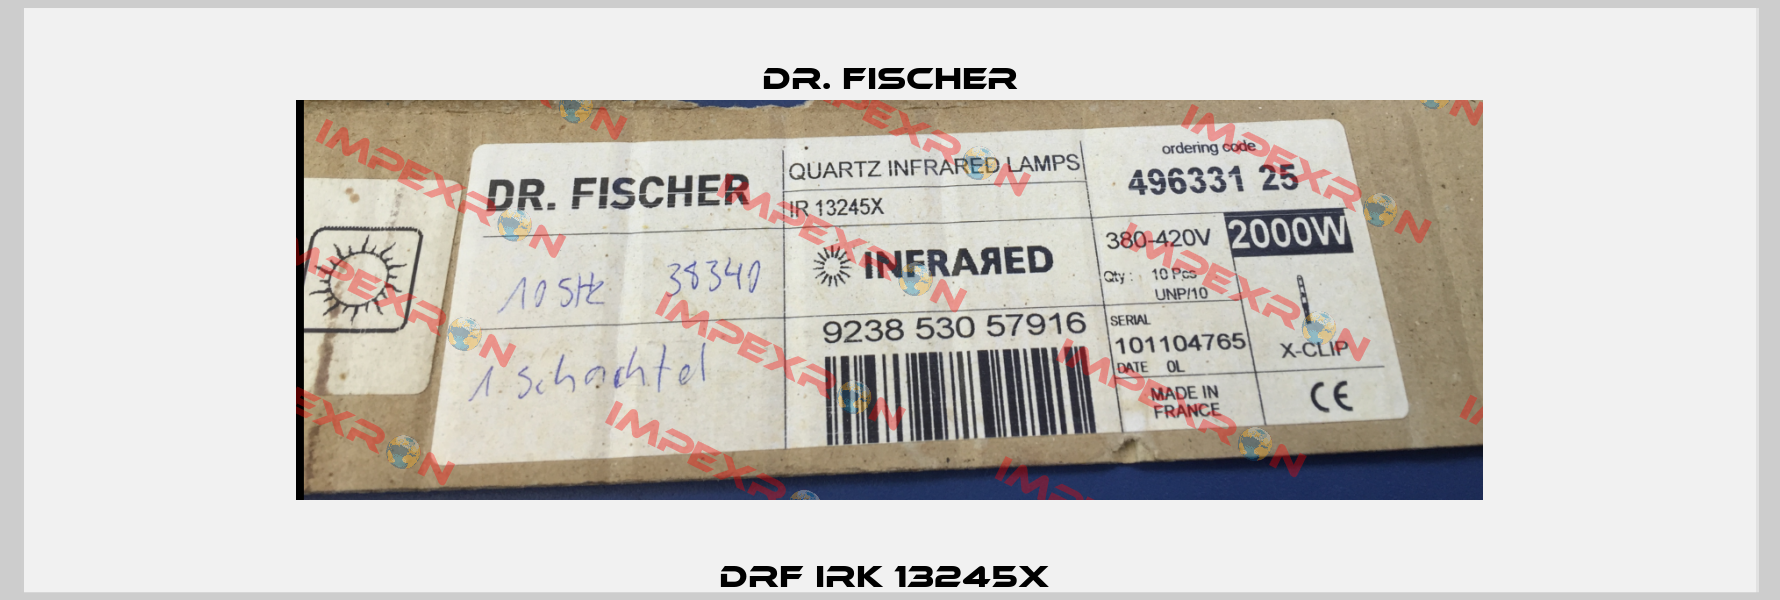 DRF IRK 13245x  Dr. Fischer